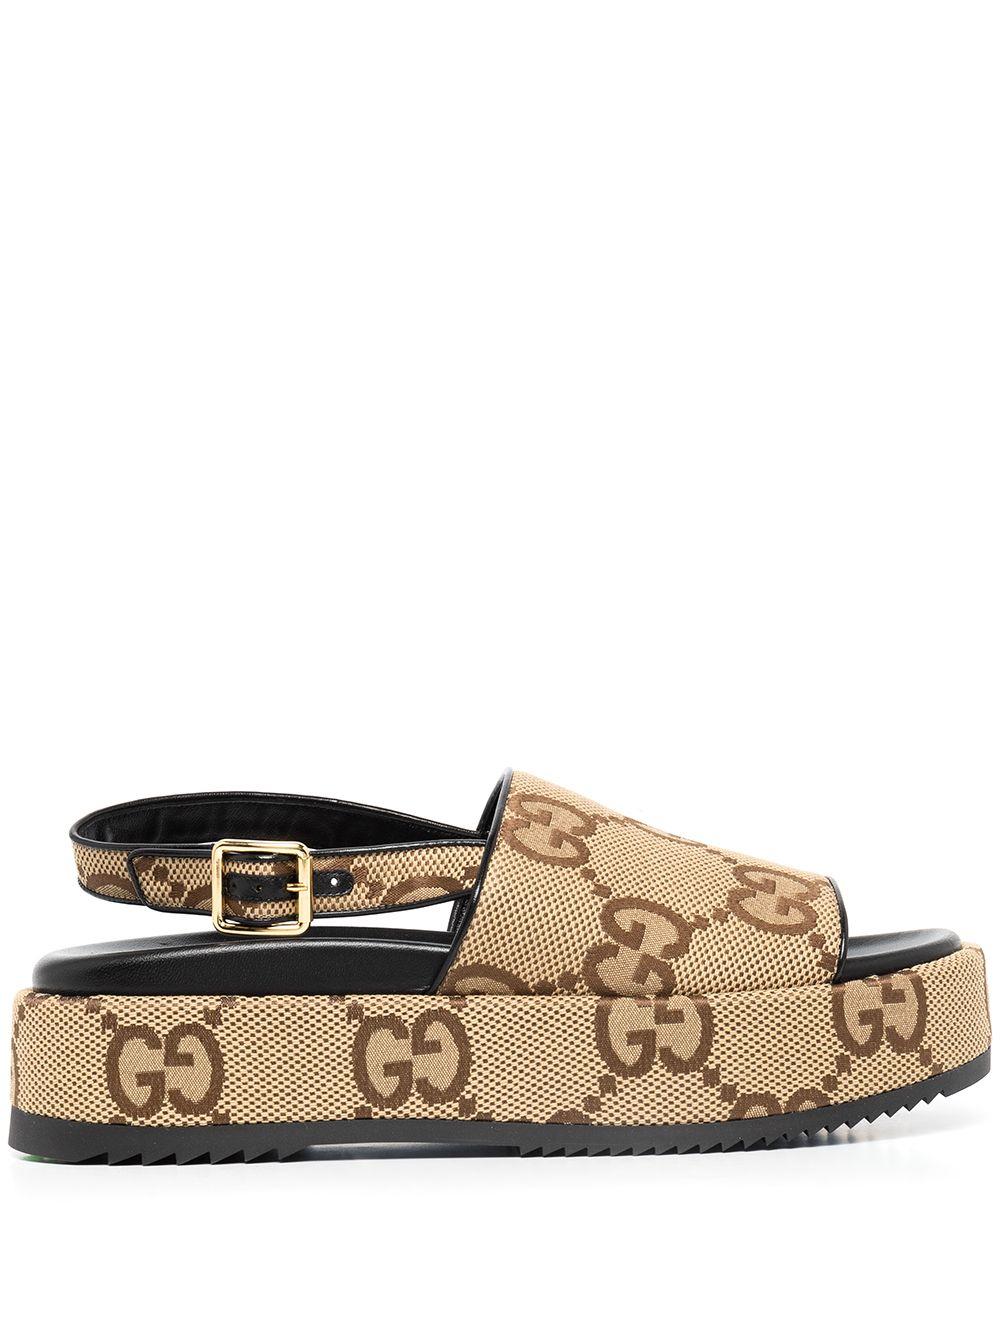 Gucci GG Supreme Platform Sandals in Brown | Lyst